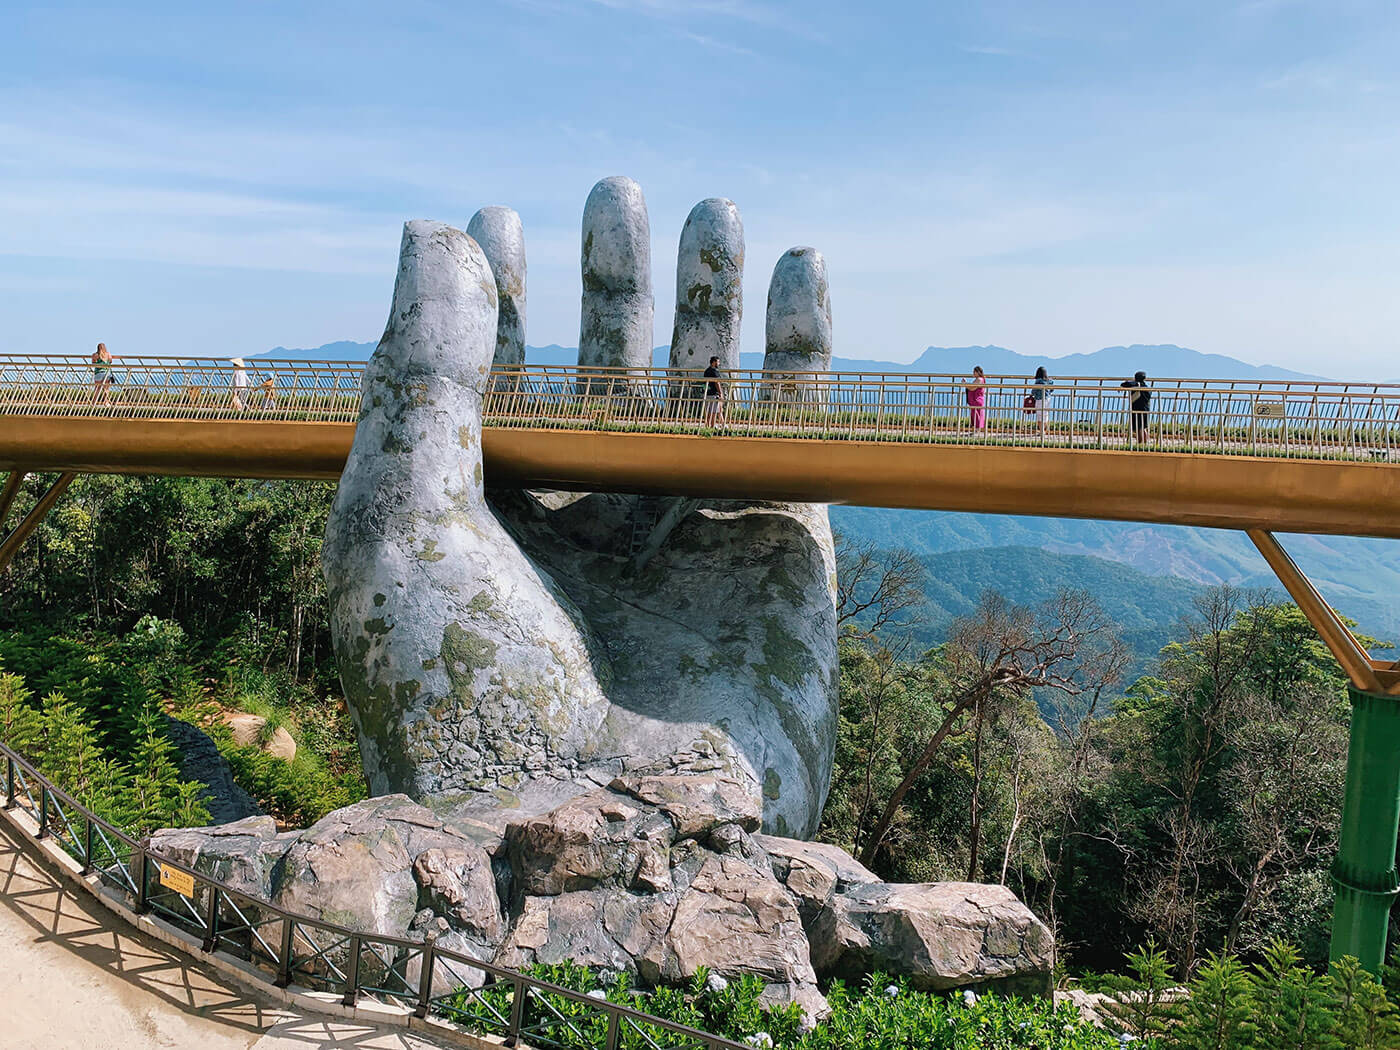 The Golden Bridge hands at Ba Na Hills